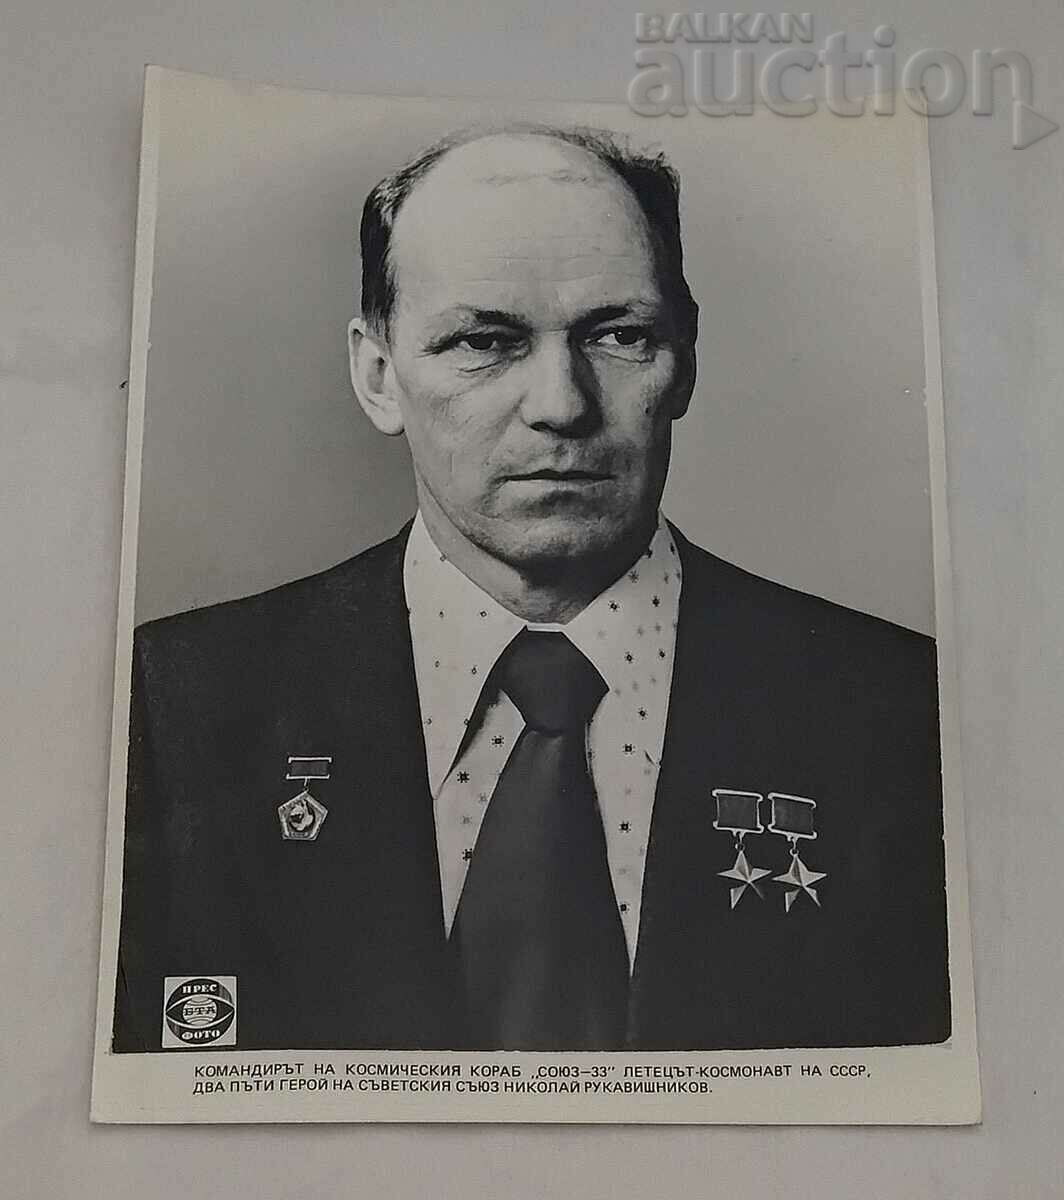 NIKOLAI RUKAVISHNIKOV "SOYUZ-33" FOTO DE PRESA URSS 1979.